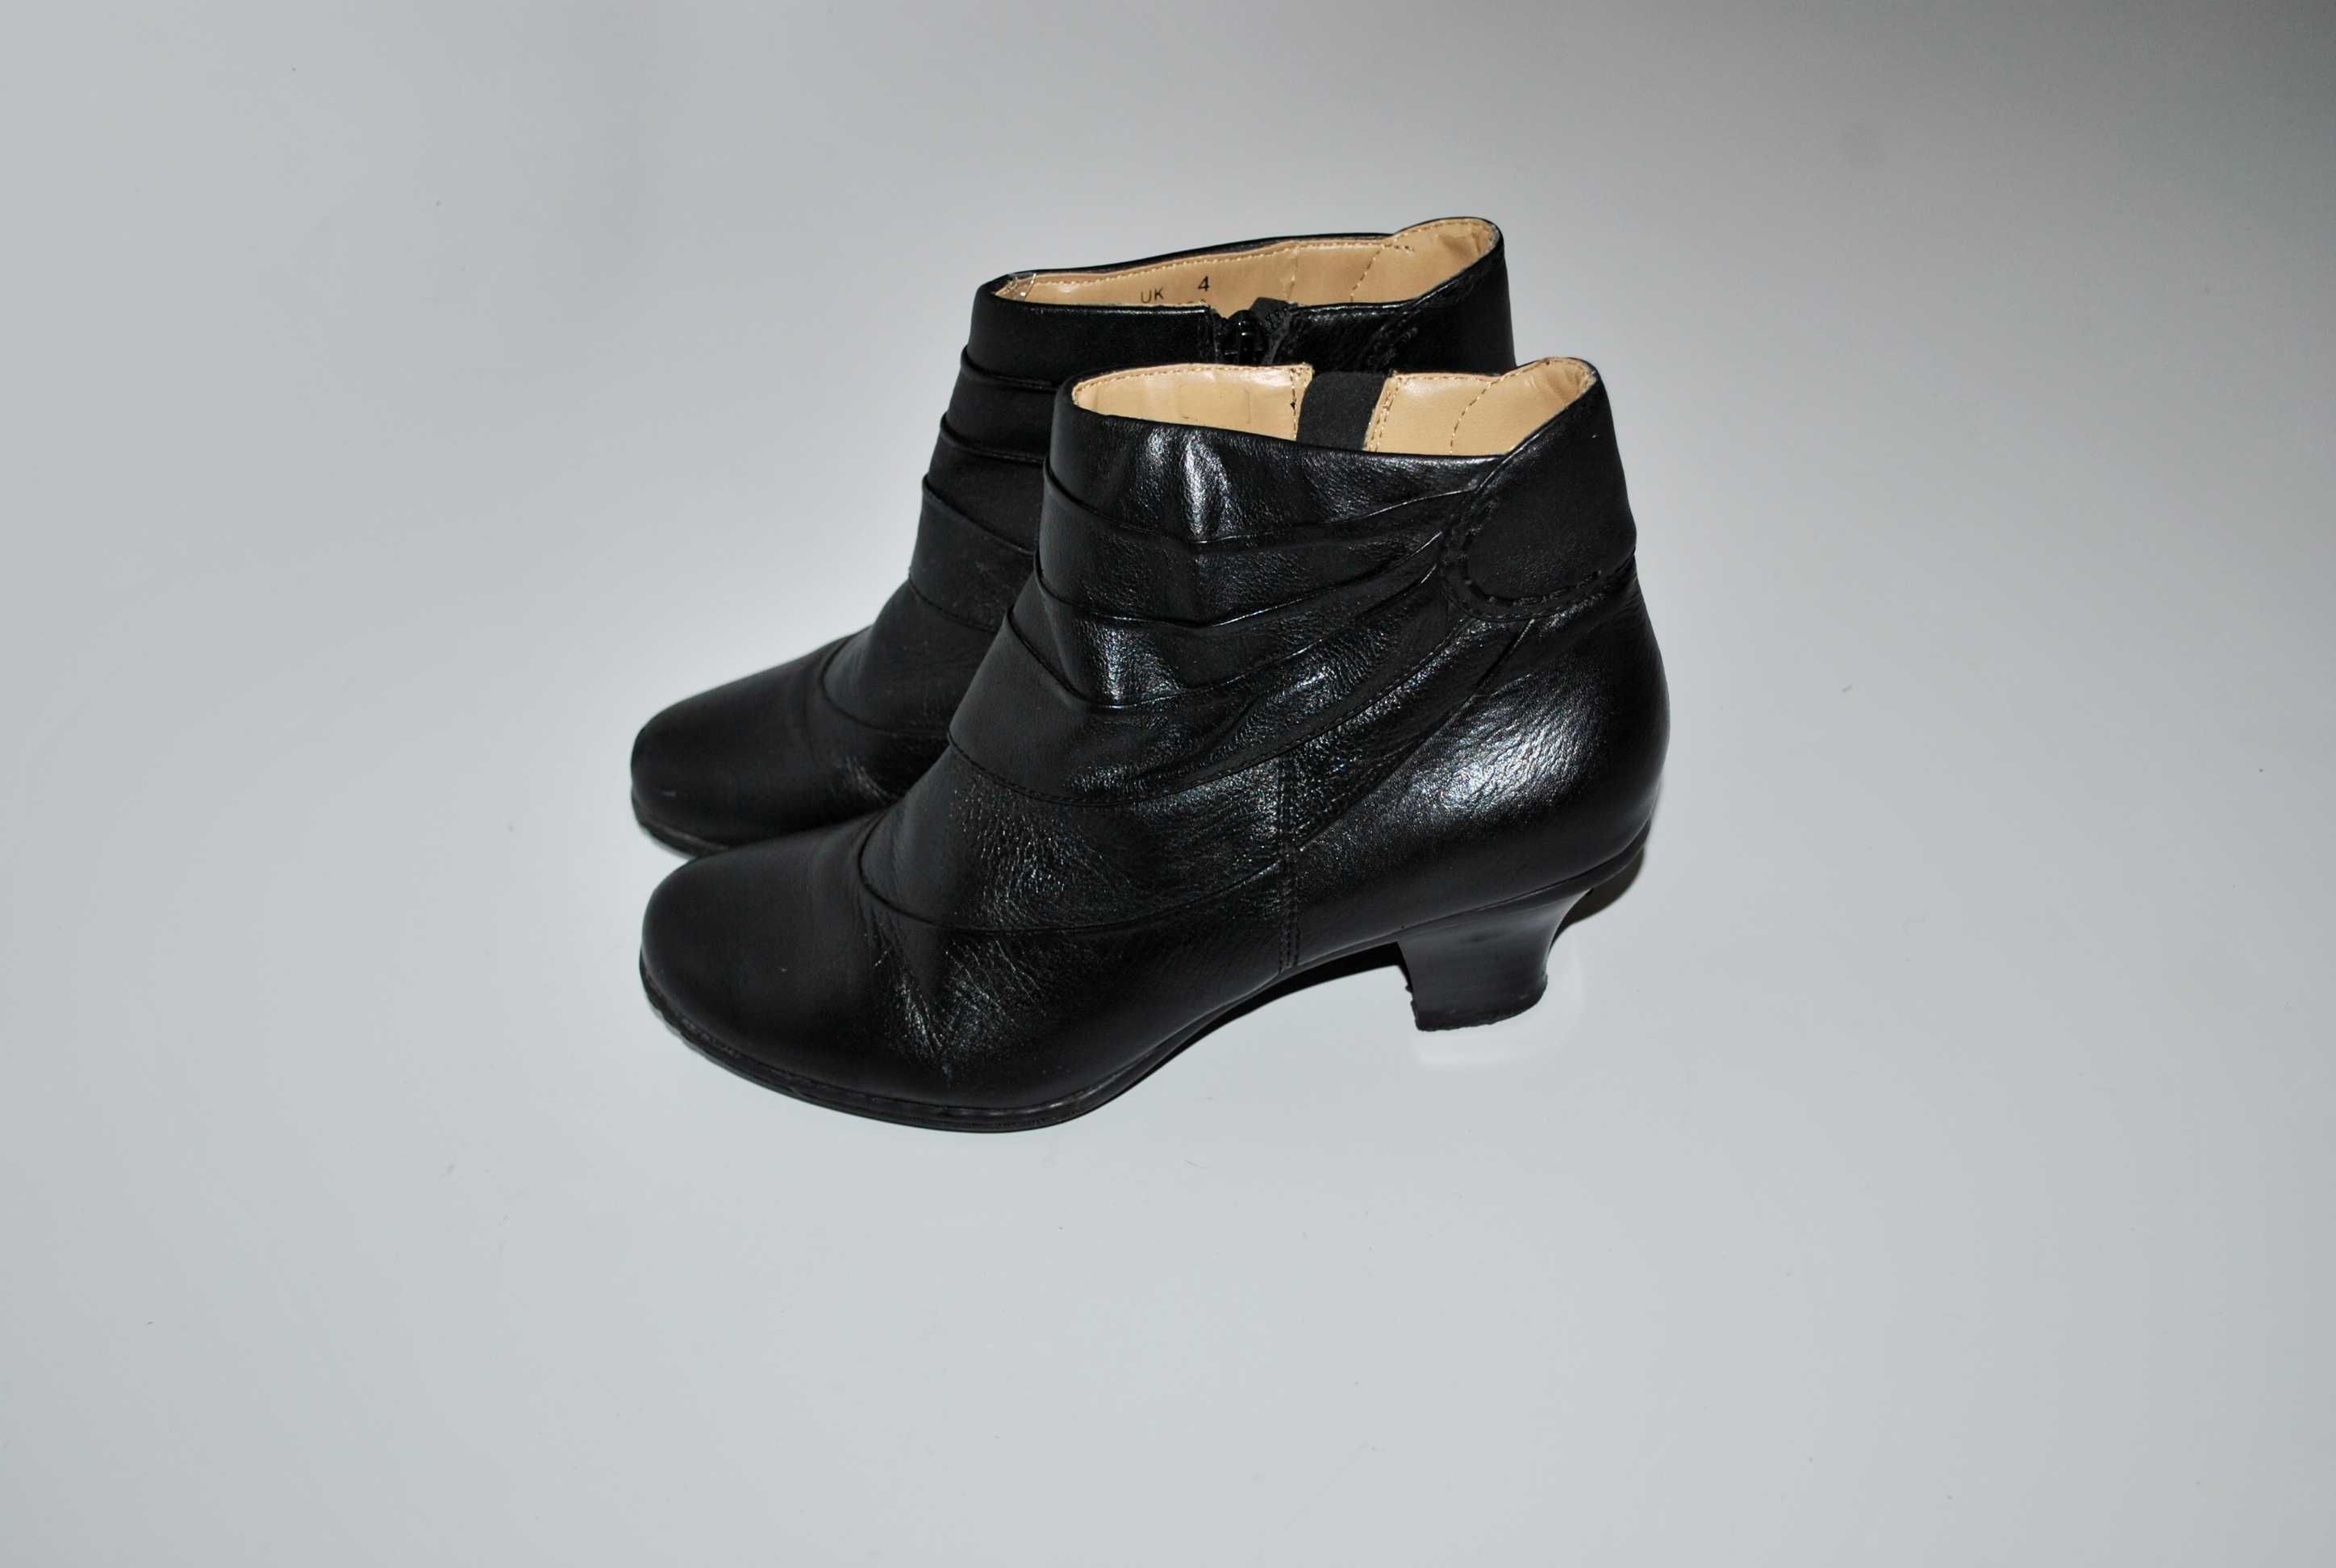 Ортопедические туфли Earth 37 23,5 см кожаные  ботинки женские черные